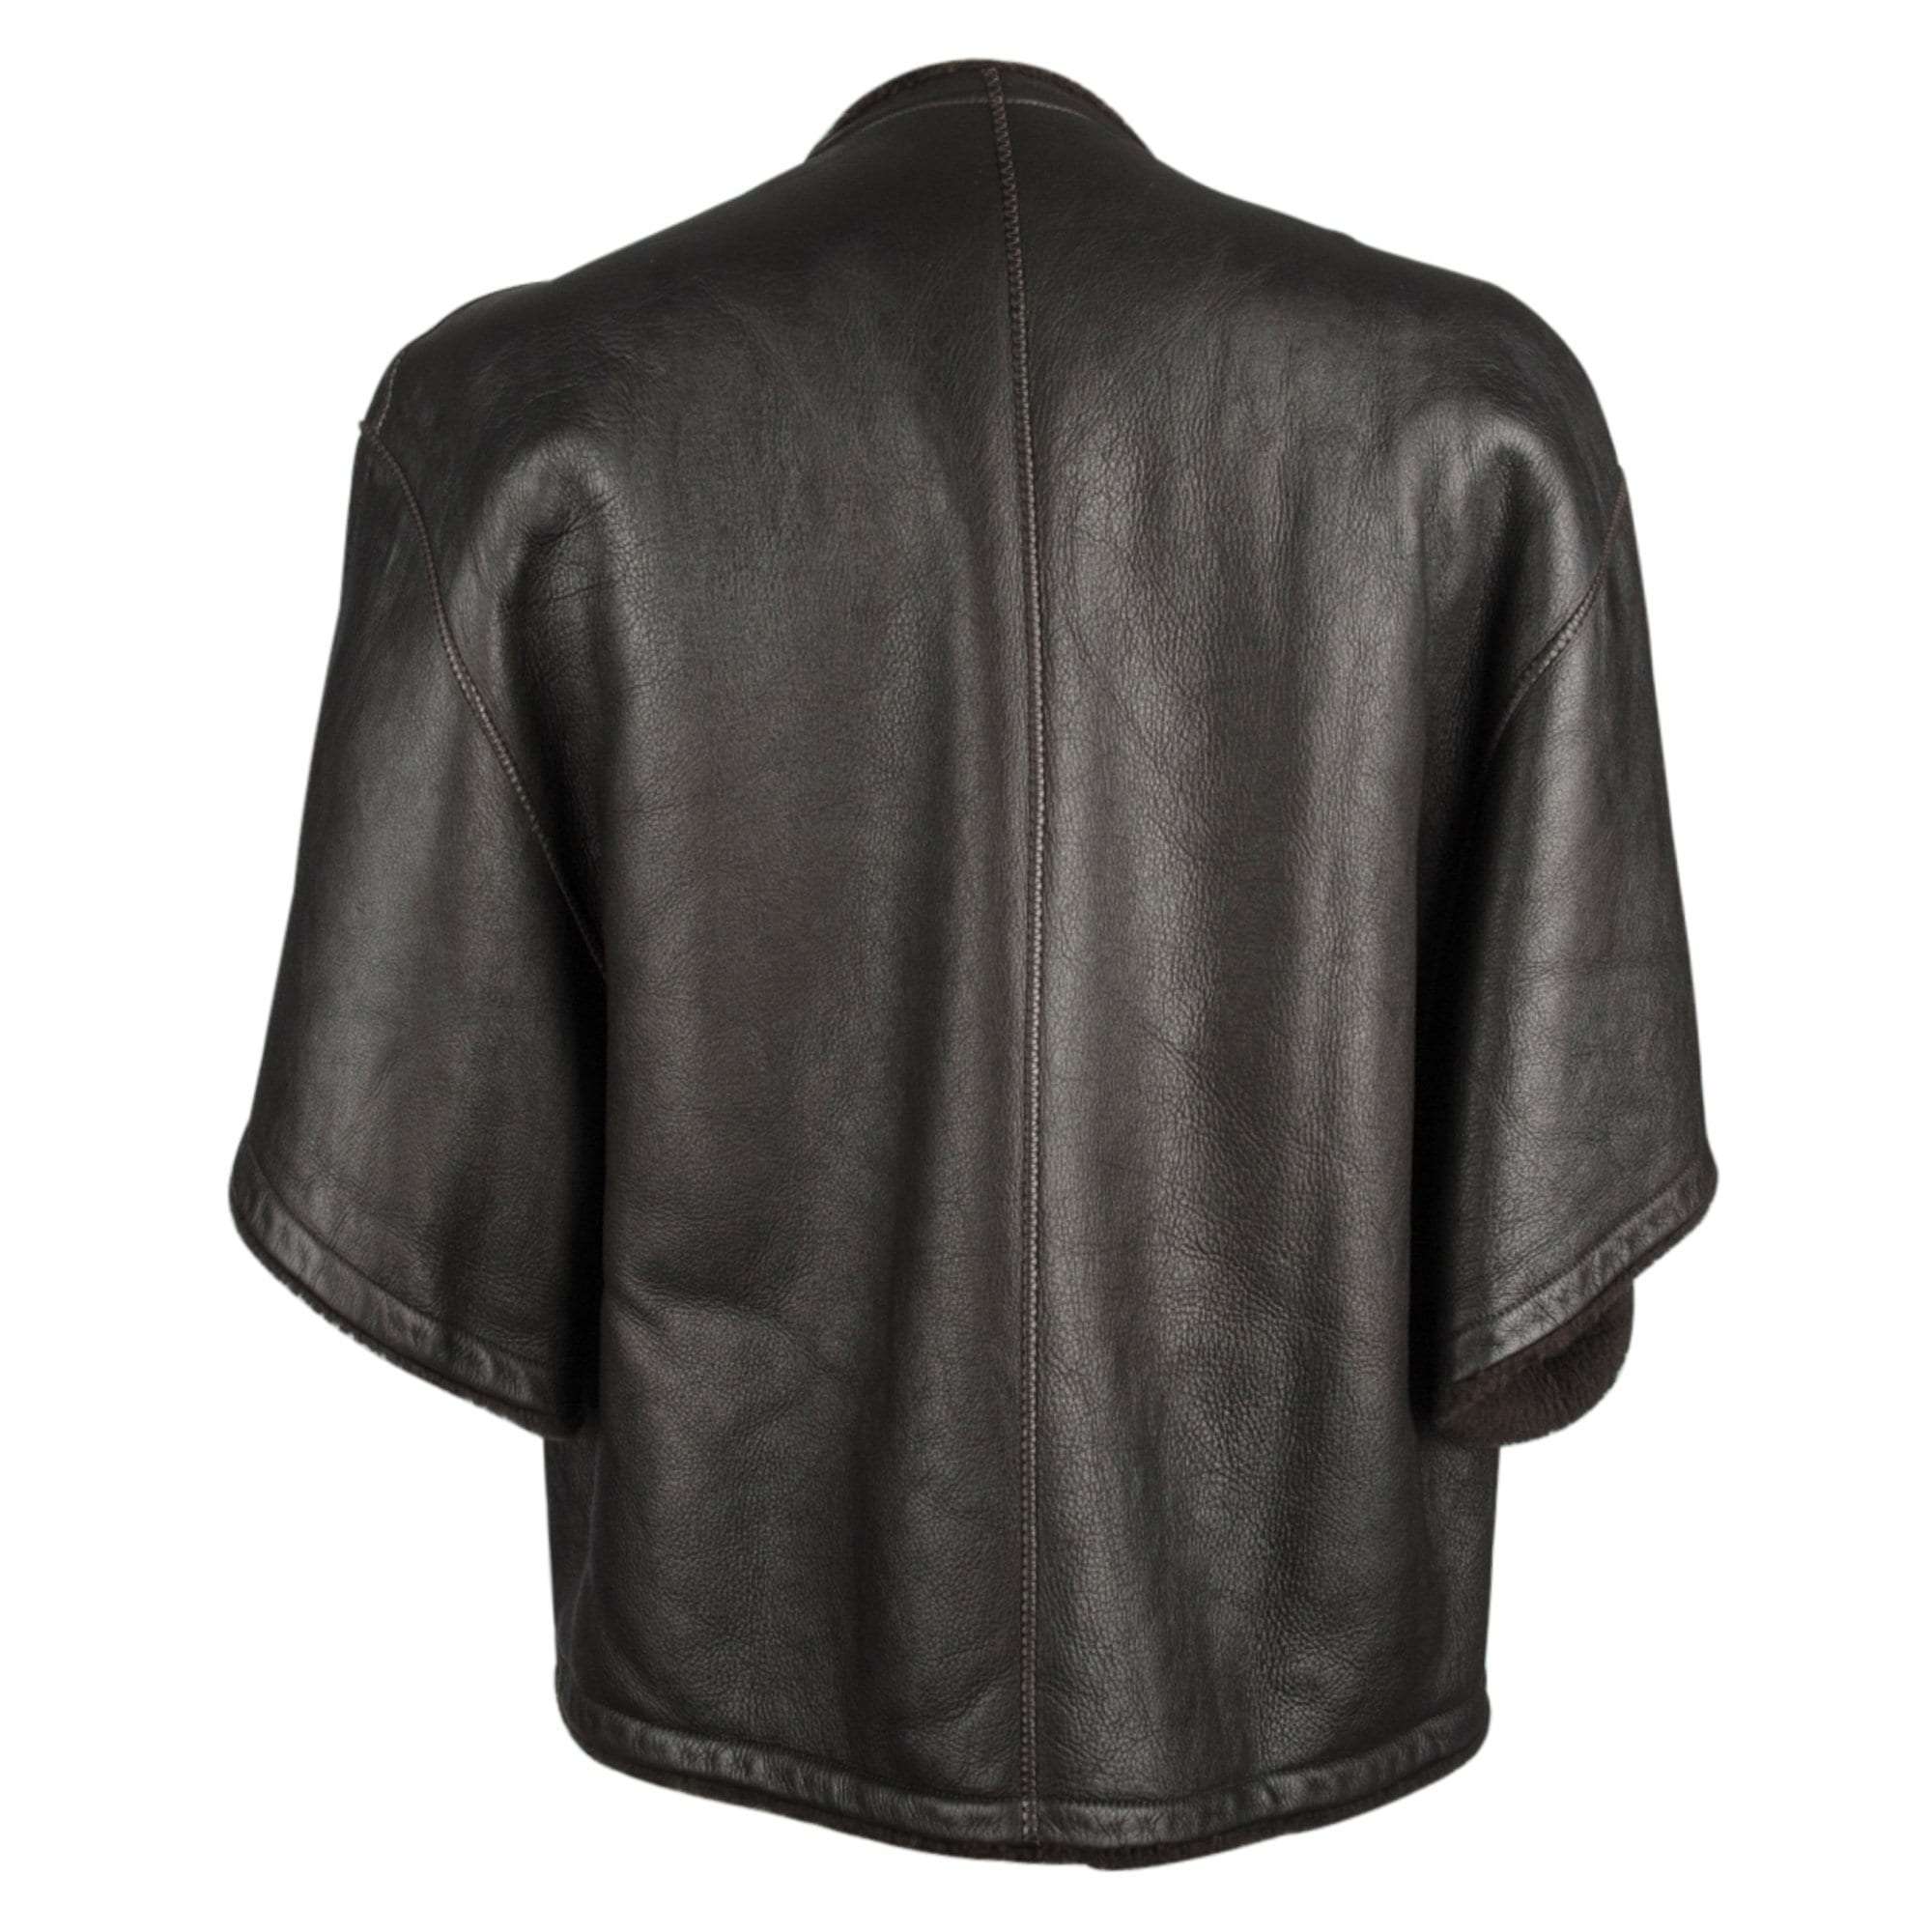 Hermes Jacket Dark Brown Striking Shearling 3/4 Sleeve 38 / 4